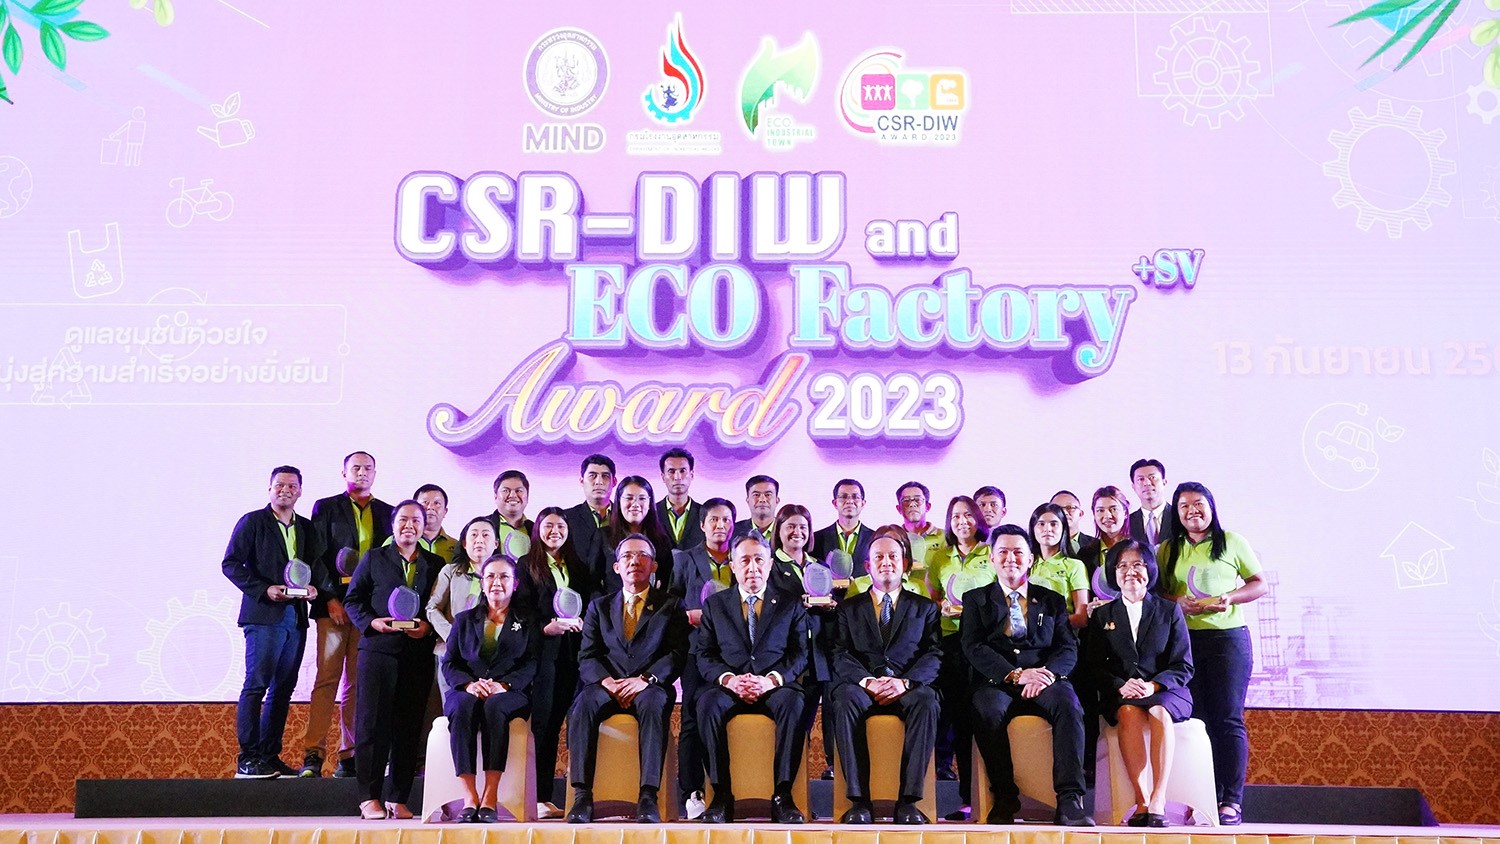 กลุ่มบริษัทศรีตรังยกขบวน 23 โรงงาน คว้ารางวัล CSR-DIW ประจำปี 2566